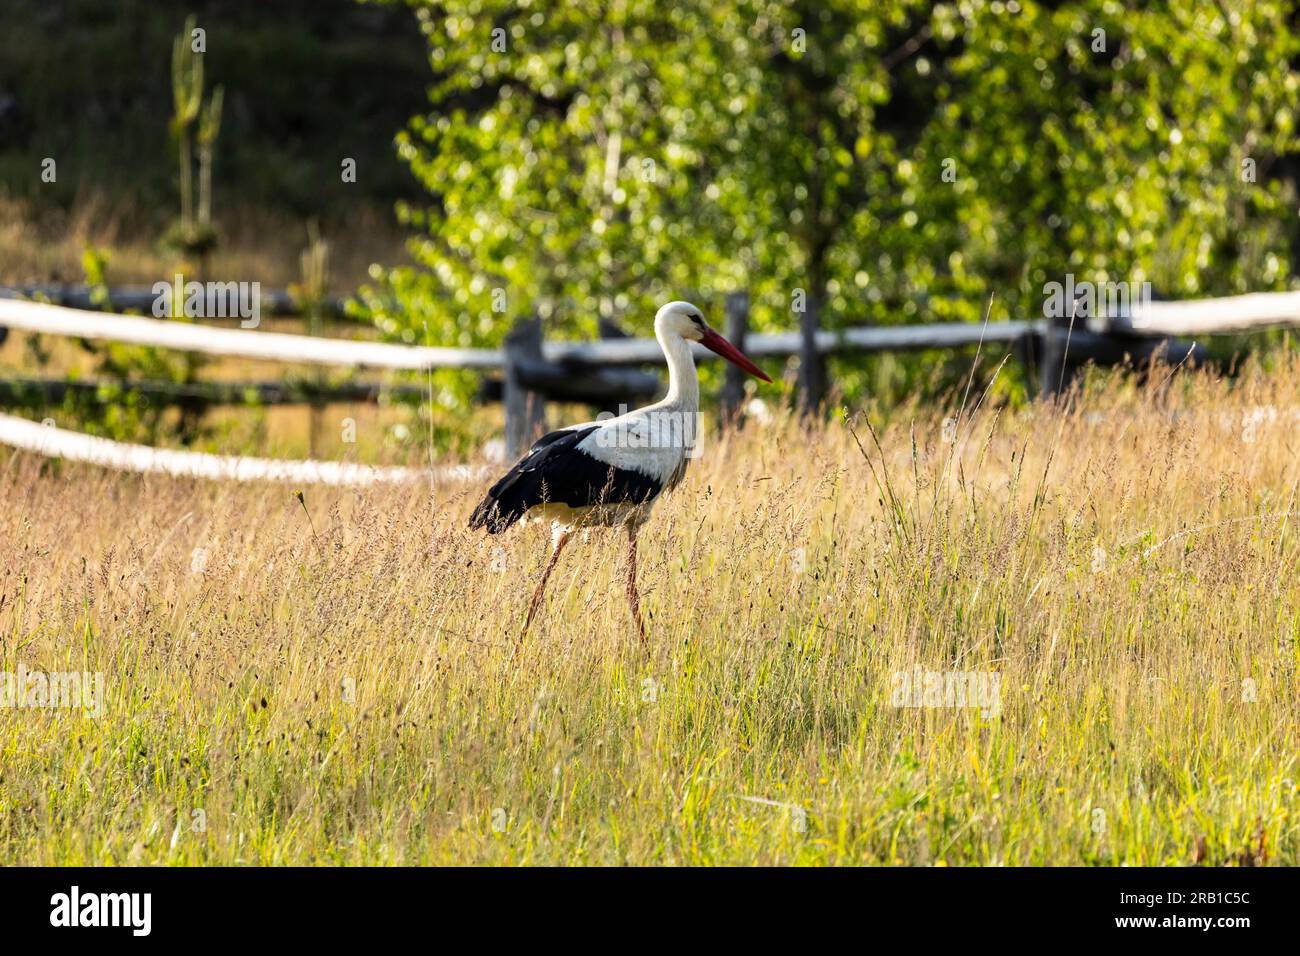 Cicogna bianca cerca cibo in un paddock in primavera Foto Stock